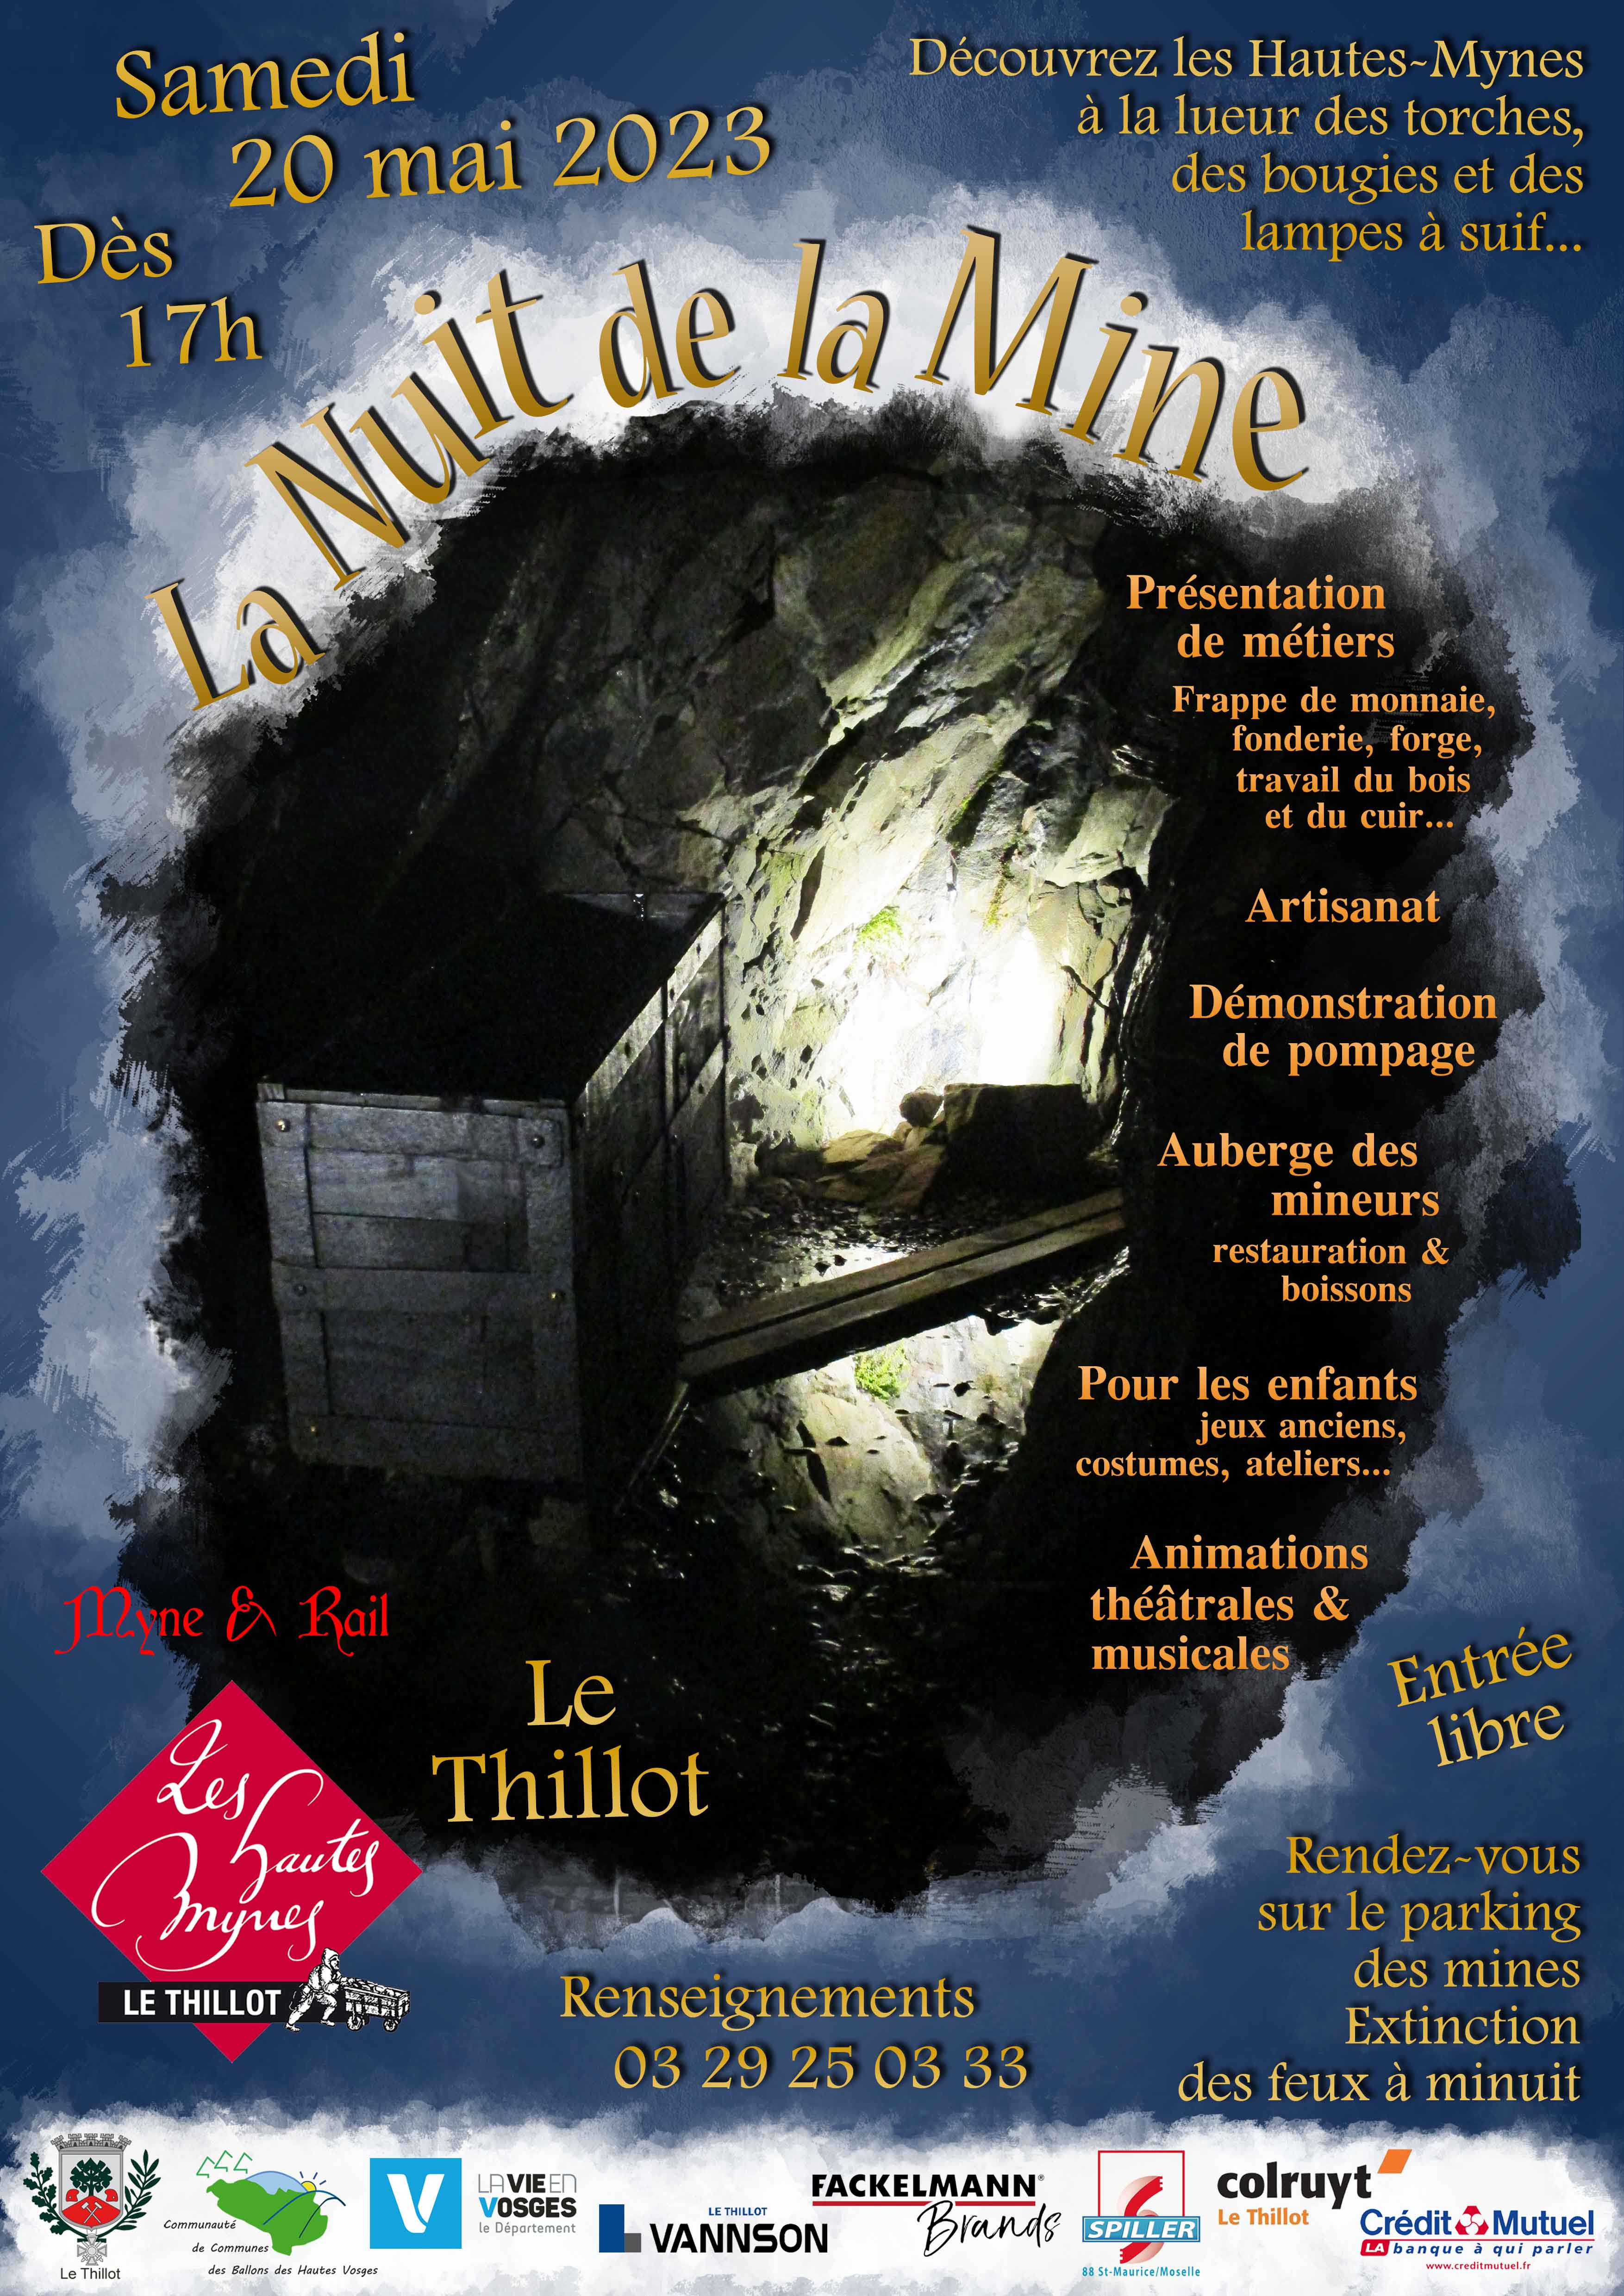 Hautes-Mynes Nuit de la Mine 20 MAI 2023